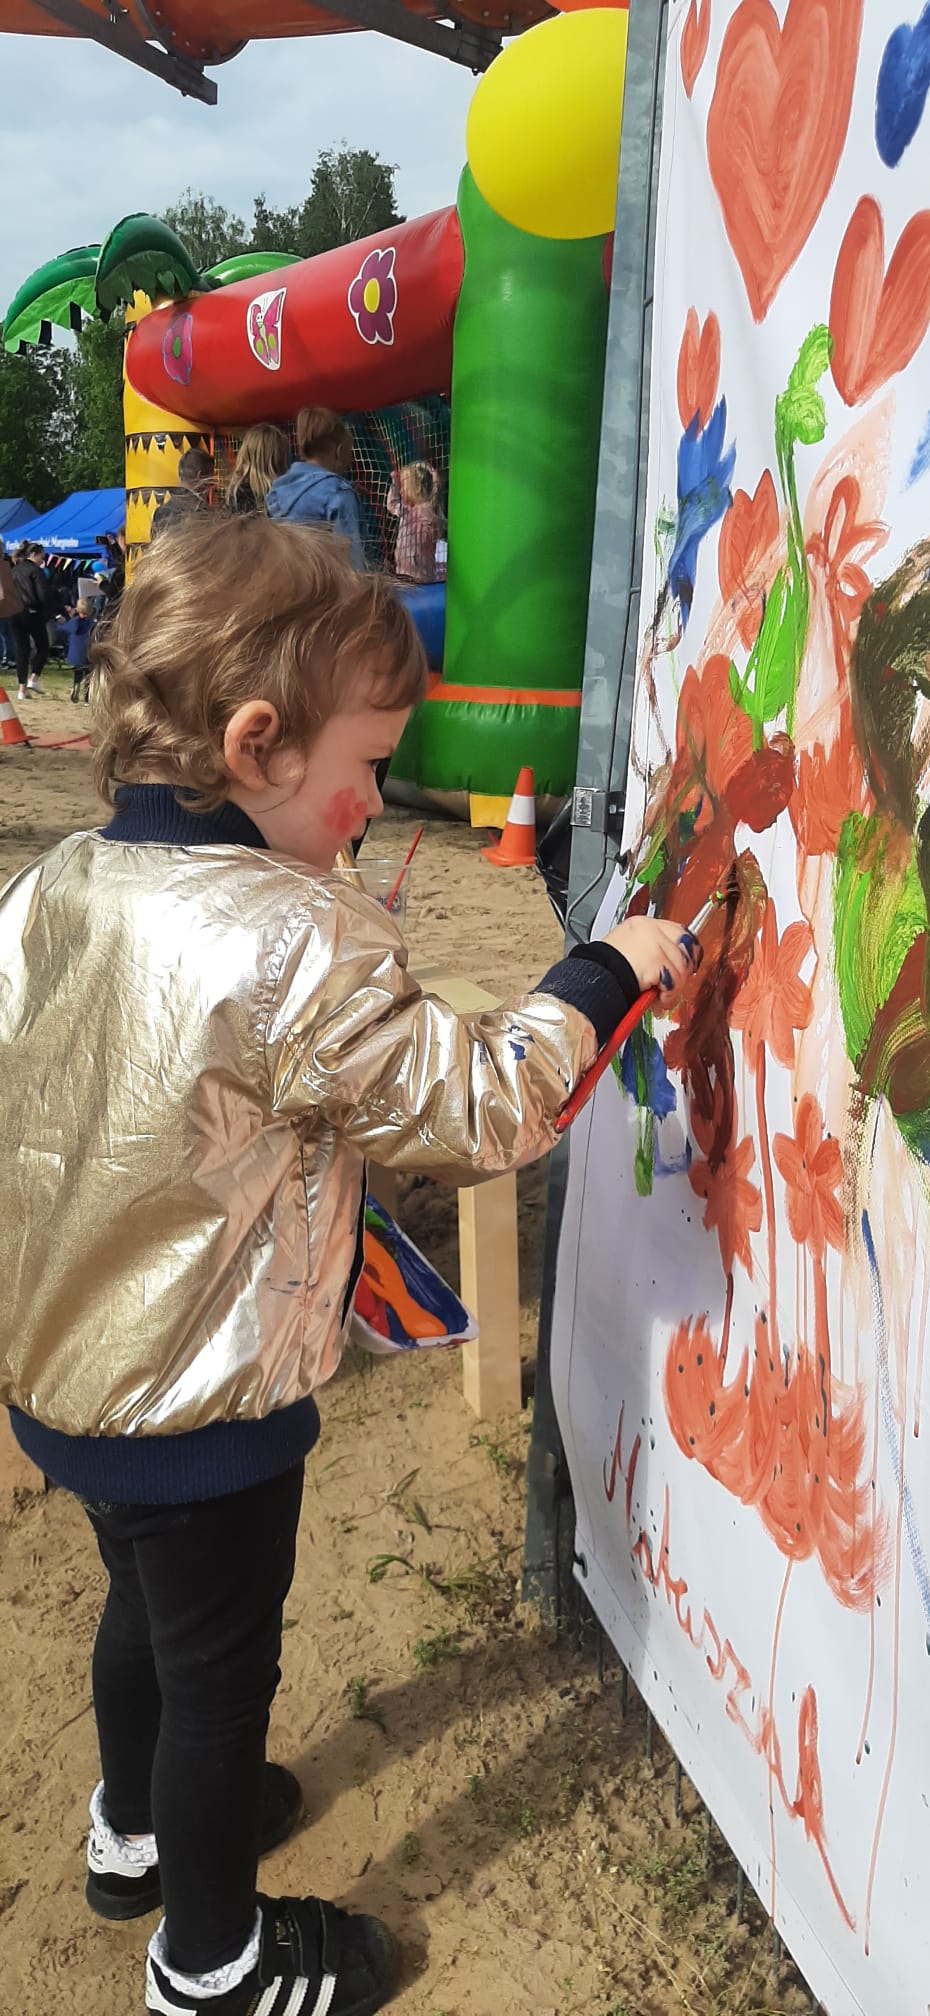 Kilkuletnie dziecko maluje farbami na powieszonych na płocie białych banerach. Za nim widać dmuchane zamki oraz namioty z malowaniem twarzy i pleceniem warkoczy.